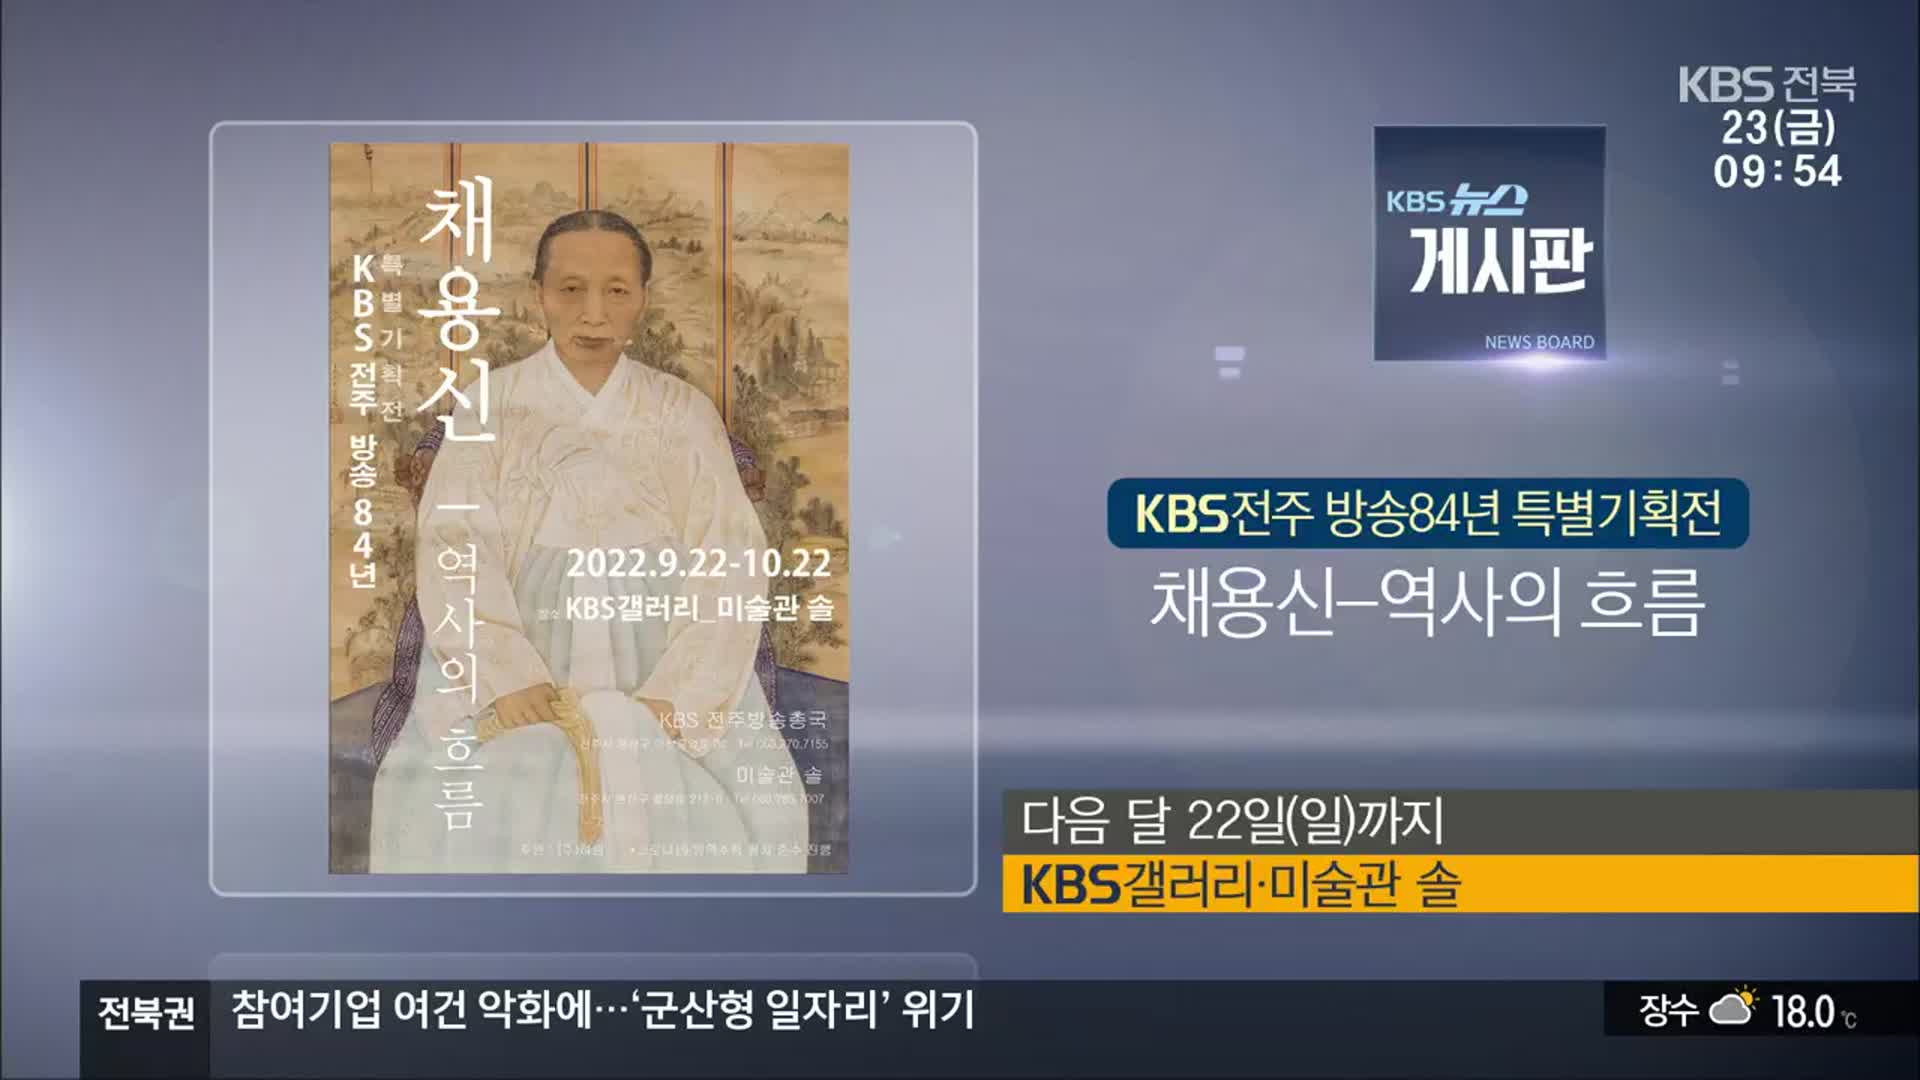 [게시판] KBS전주 방송84년 특별기획전 ‘채용신-역사의 흐름’ 외